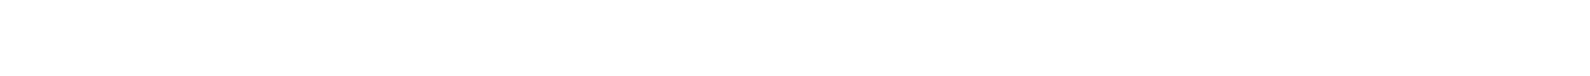 General Dynamics logo grand pour les fonds sombres (PNG transparent)